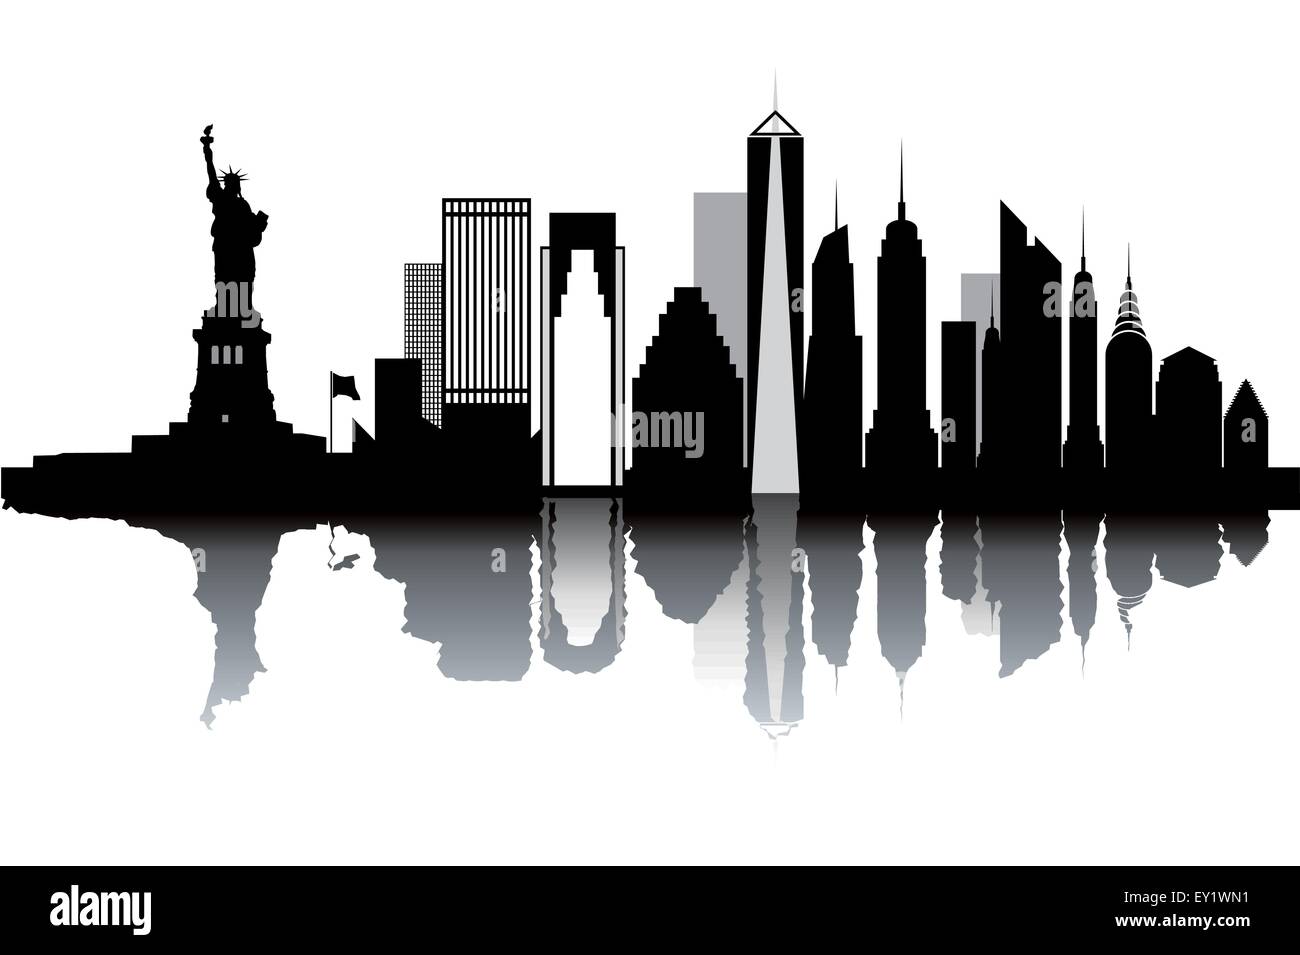 New York skyline - black and white vector illustration Stock Vector